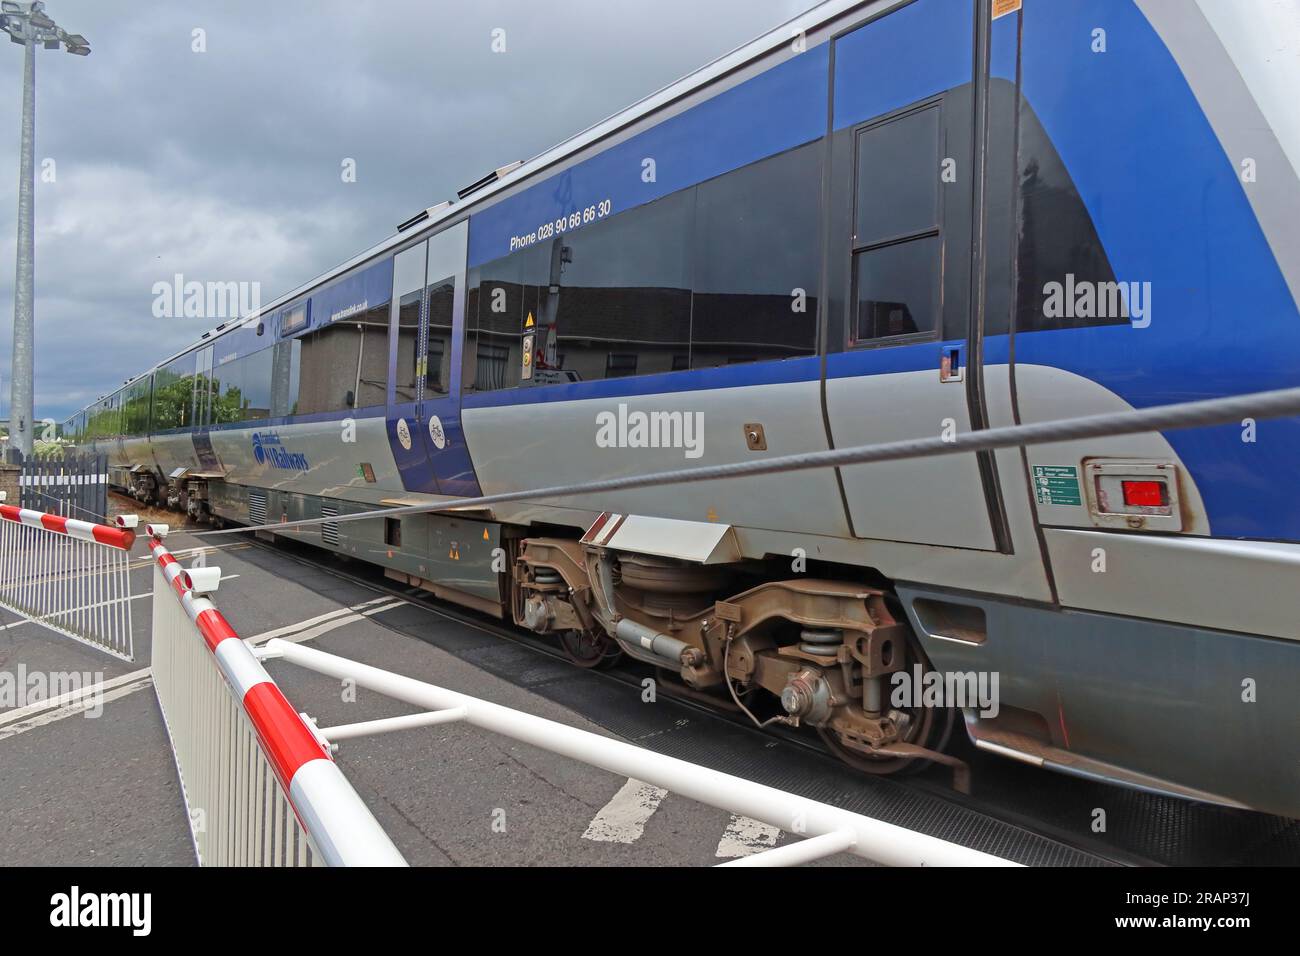 Le train NI Railways passe le passage à niveau en toute sécurité à Bushmills Rd, Coleraine, Irlande du Nord, UK, BT52 2BN Banque D'Images